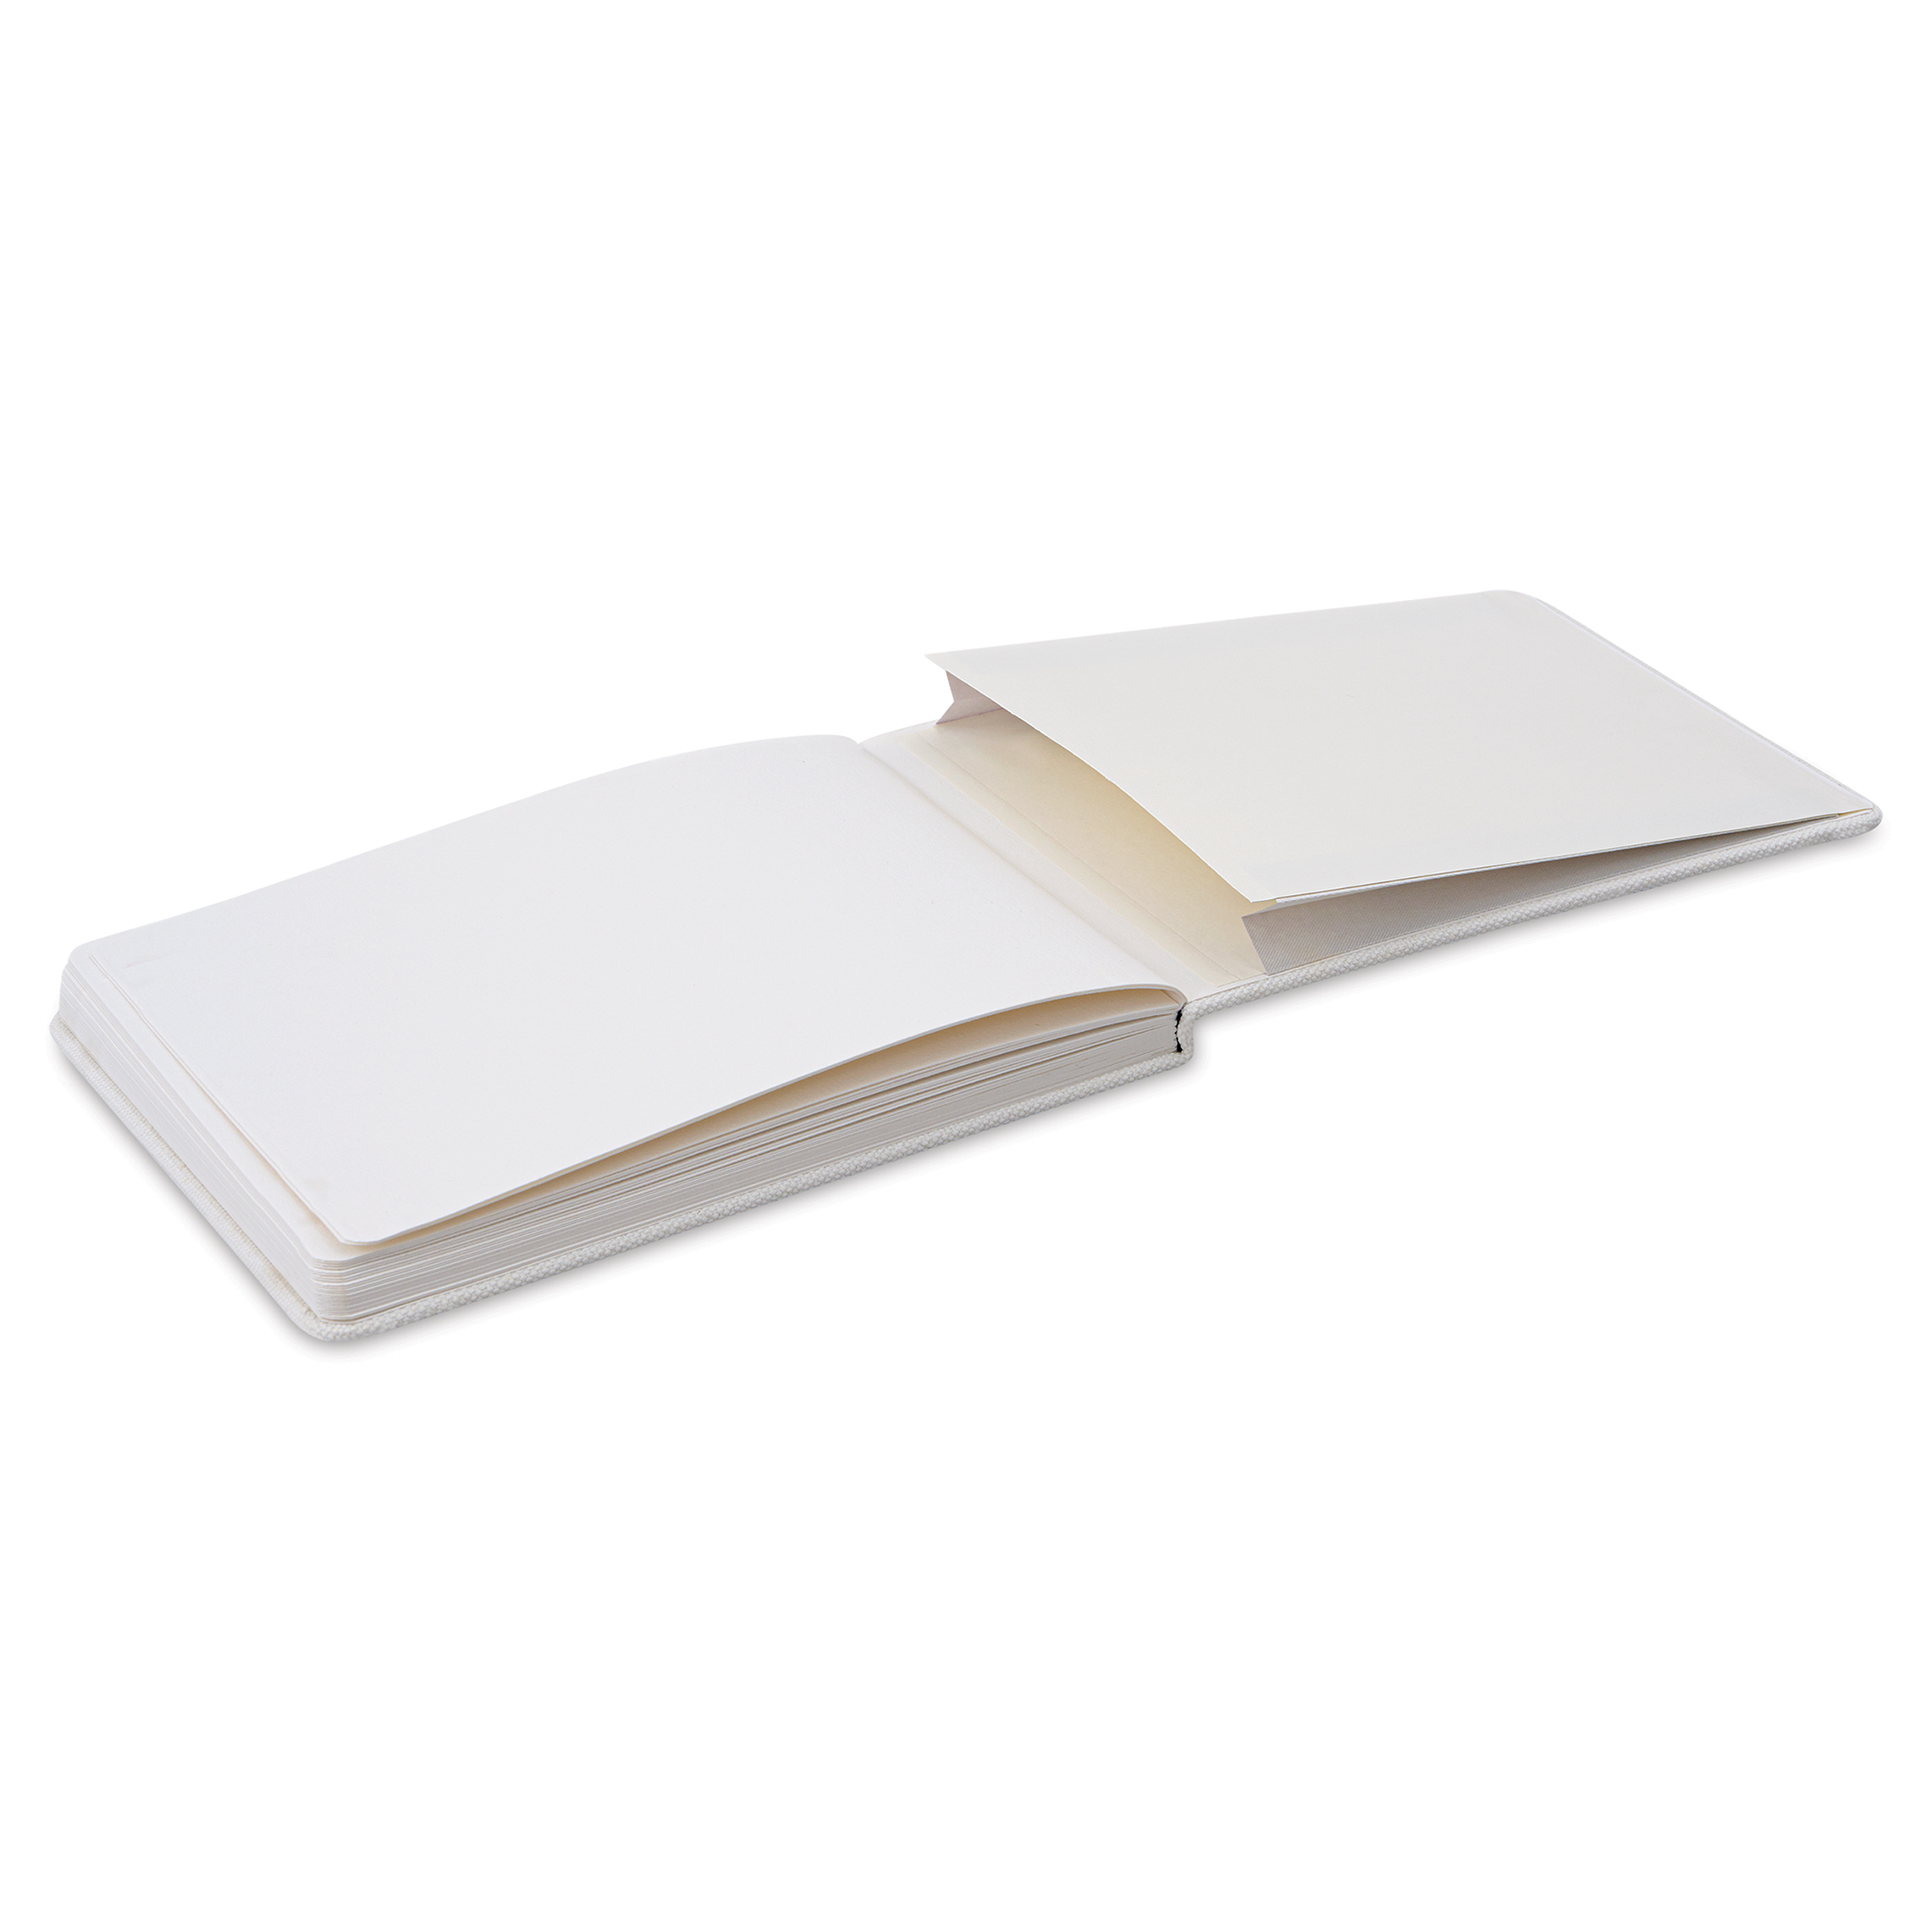 Etchr Mixed Media Hardbound Sketchbook - A5, 5.8 x 8.3 Cold Press, Landscape